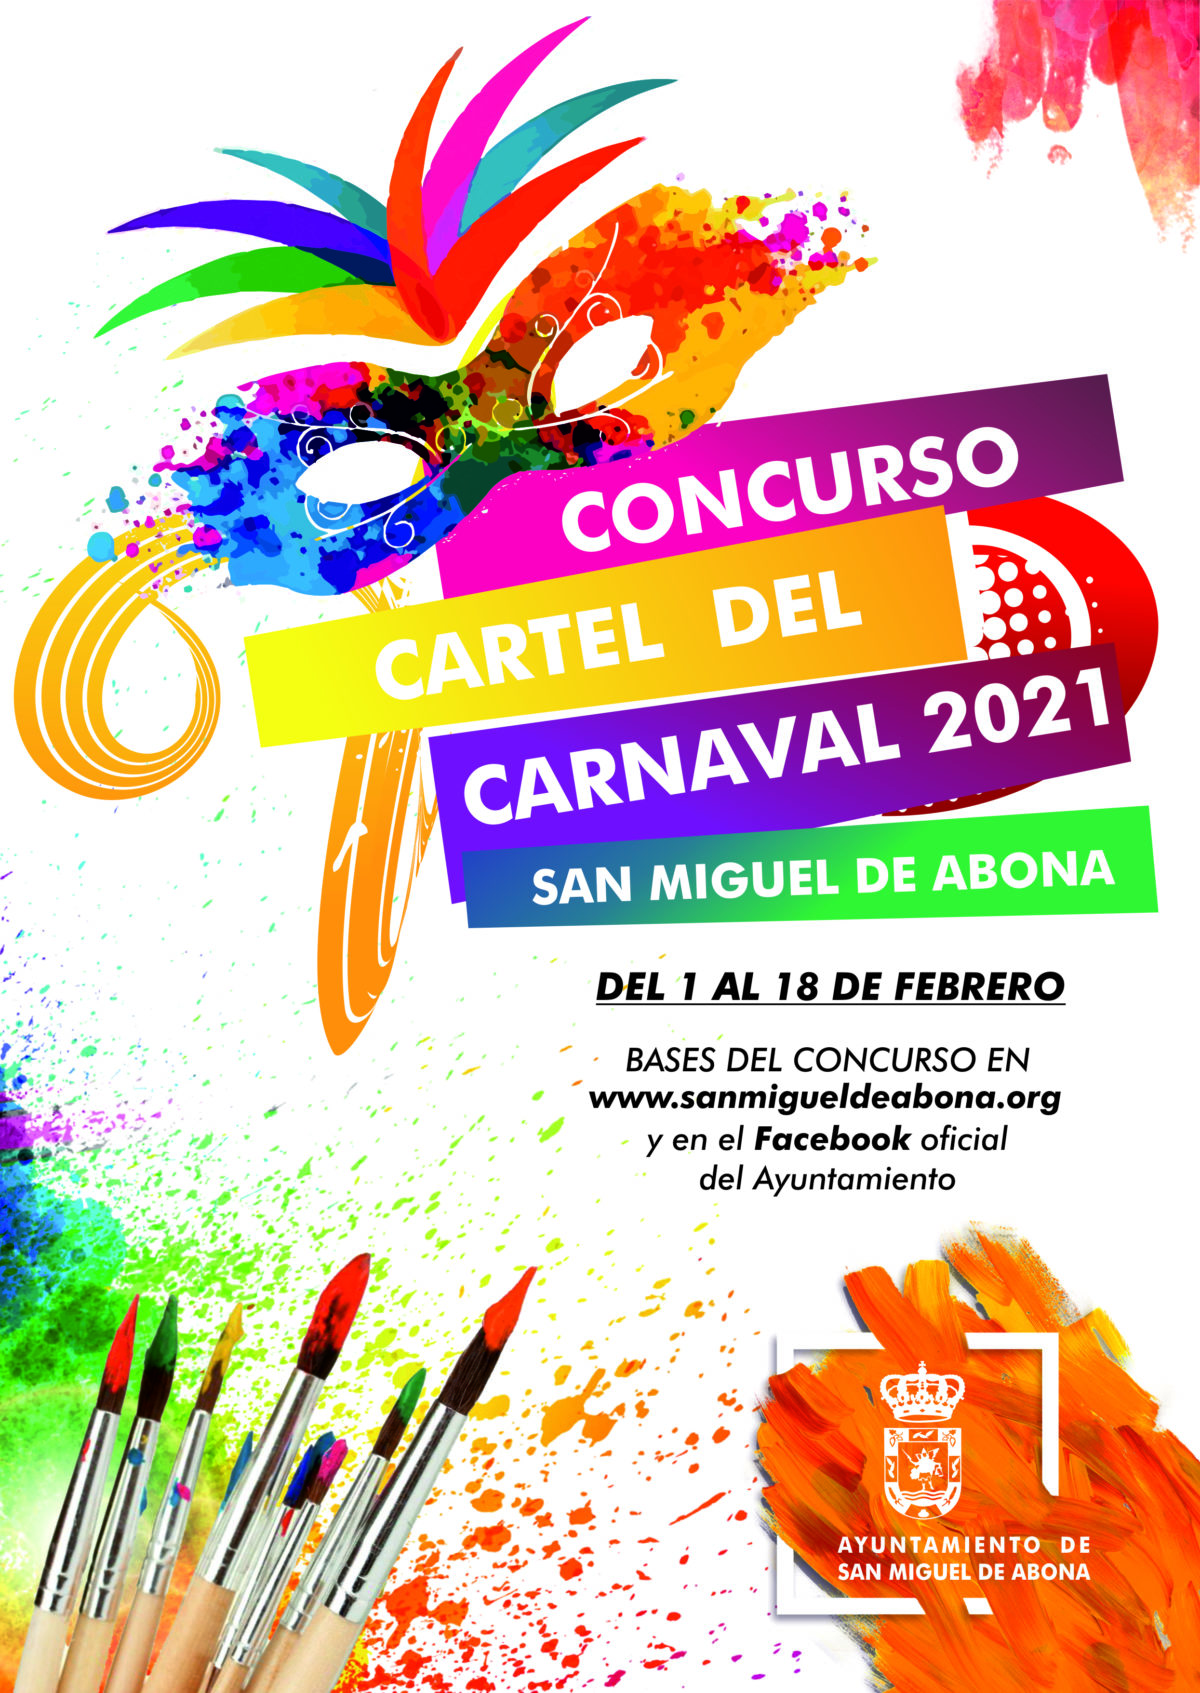 Participa en el concurso “CARTEL DE CARNAVAL 2021 SAN MIGUEL DE ABONA”